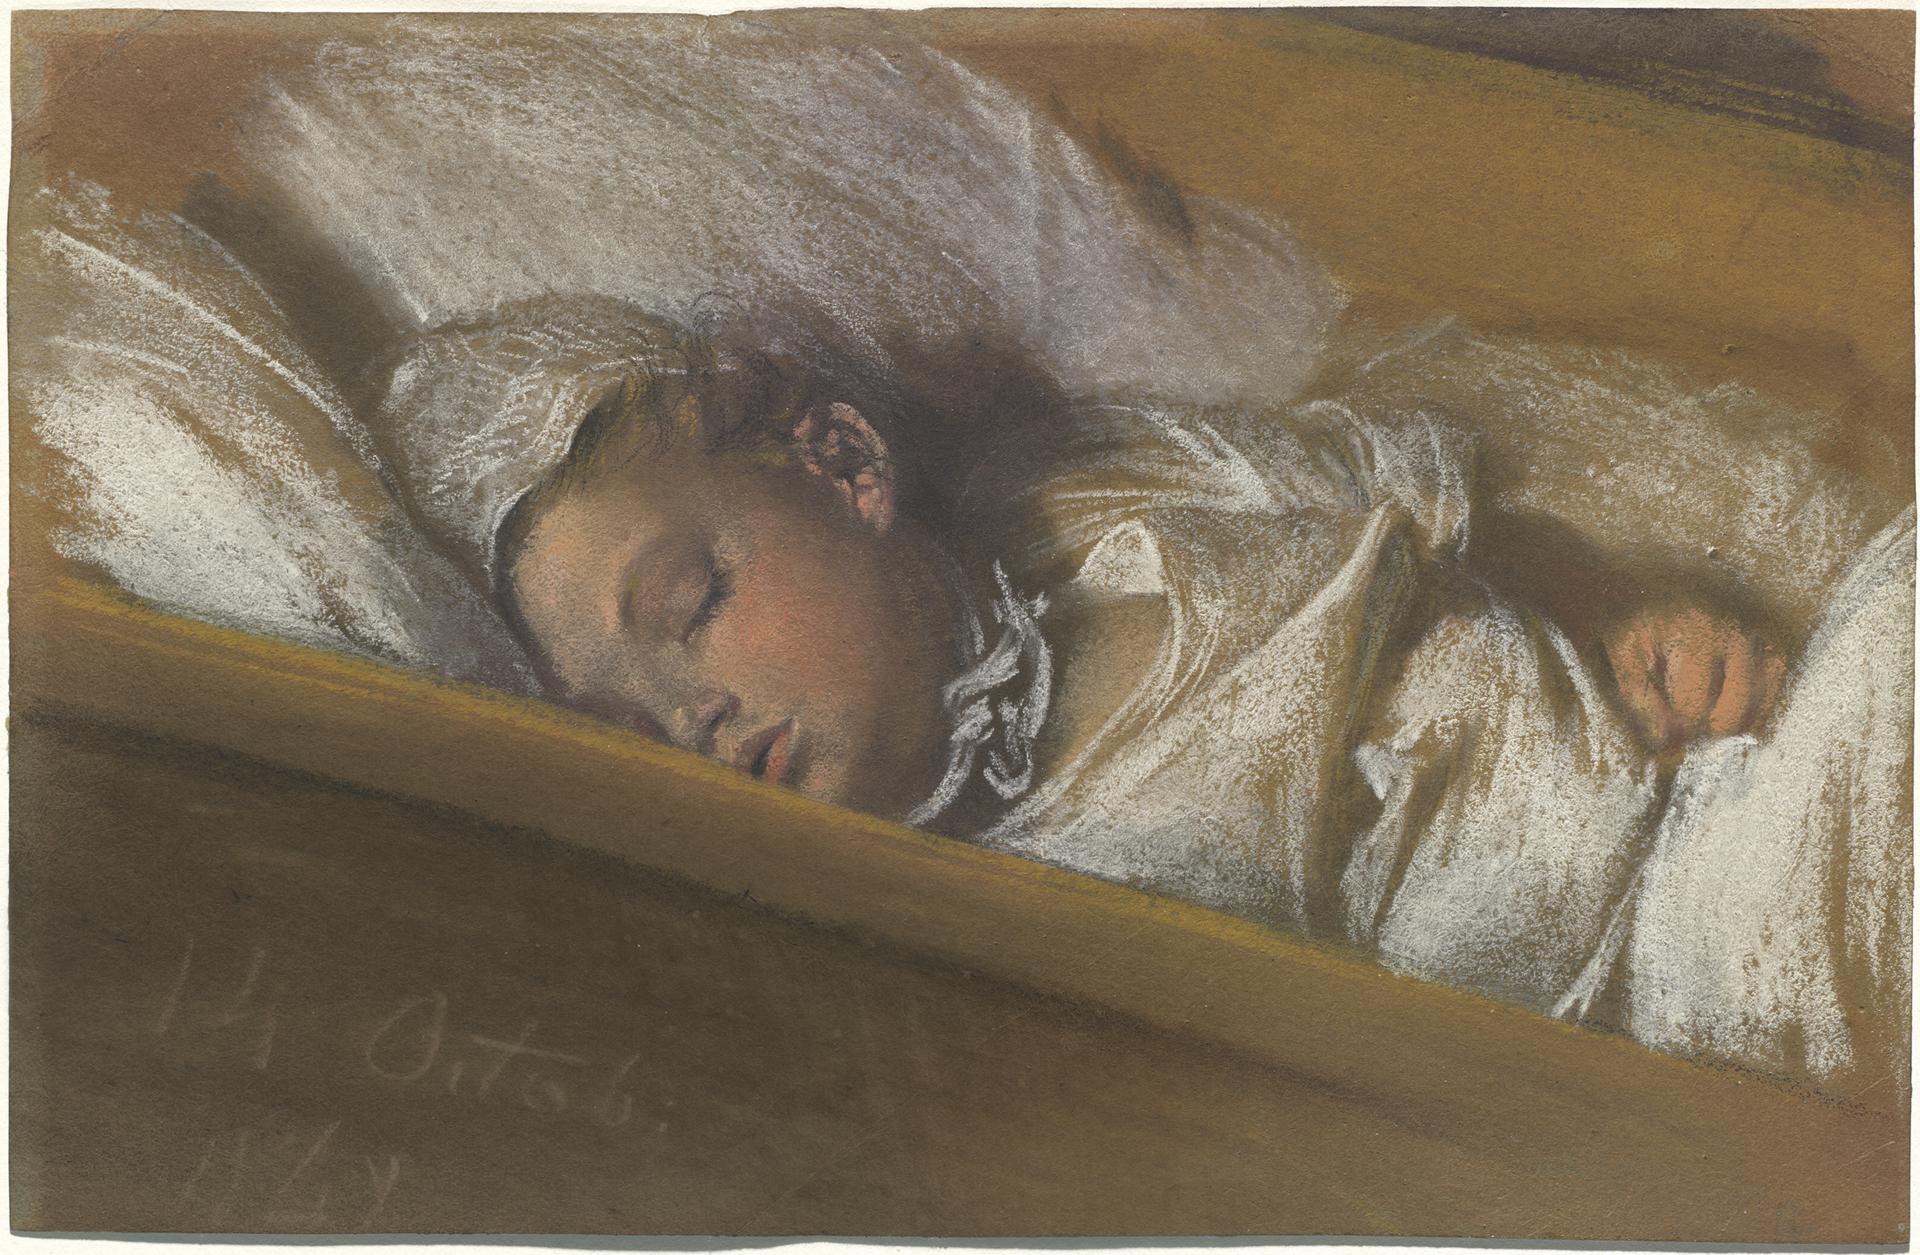 0005_门采尔_门采尔绘画作品集-An Infant Asleep in His Crib_3308x2162PX_TIF_72DPI_20_0